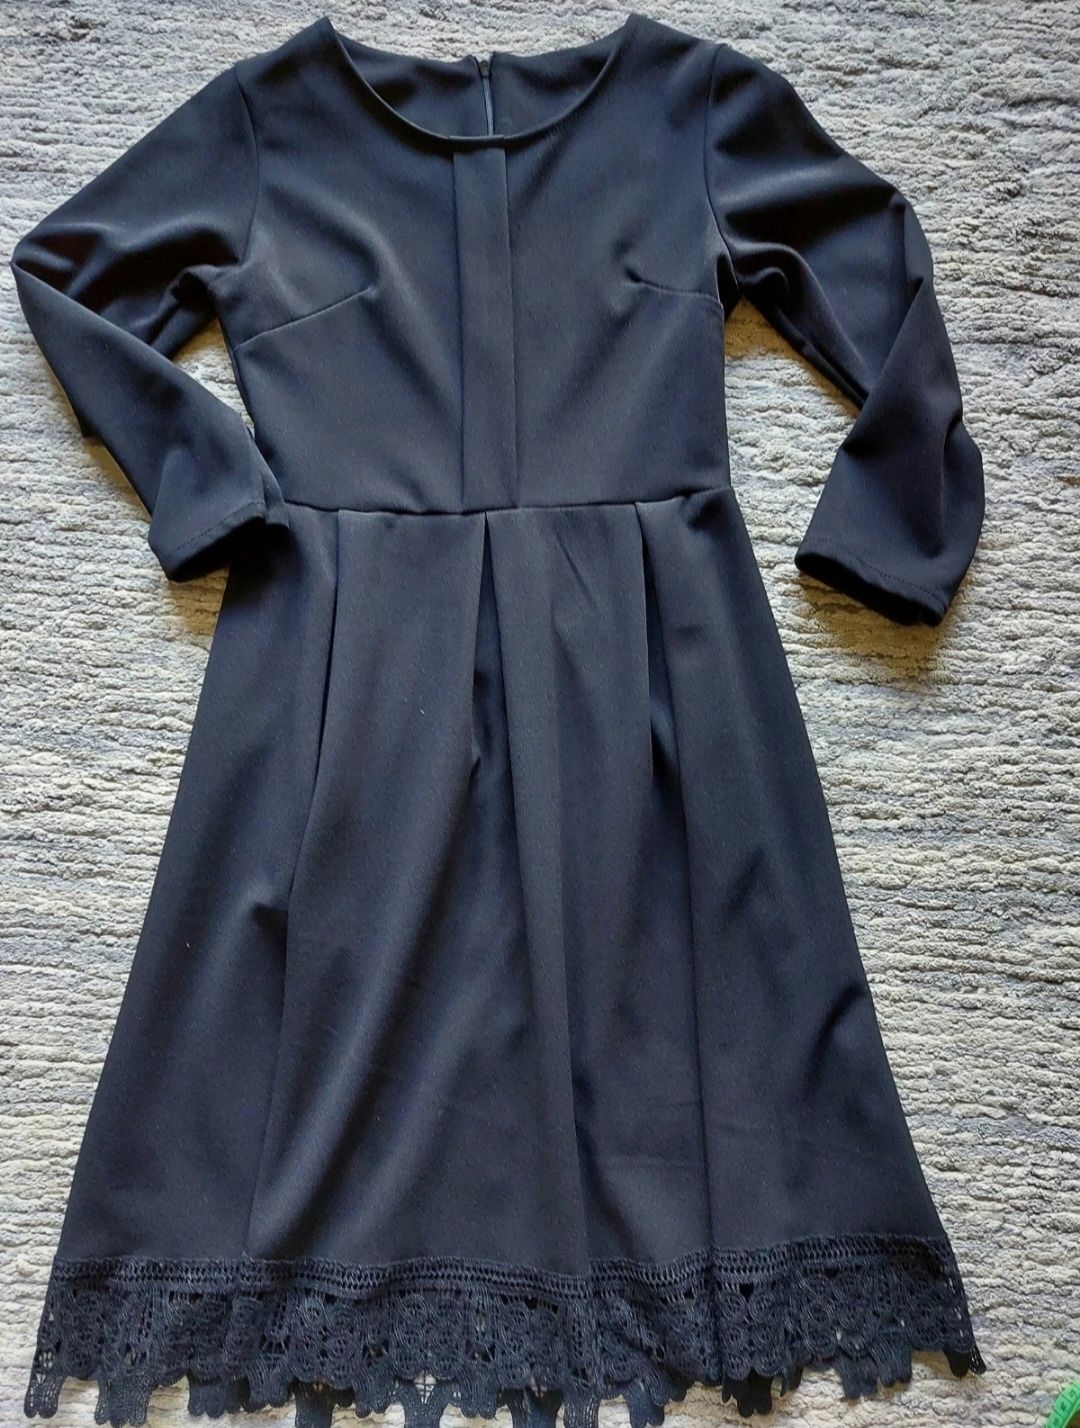 Śliczna czarna sukienka dla dziewczynki 158/164 na święta,